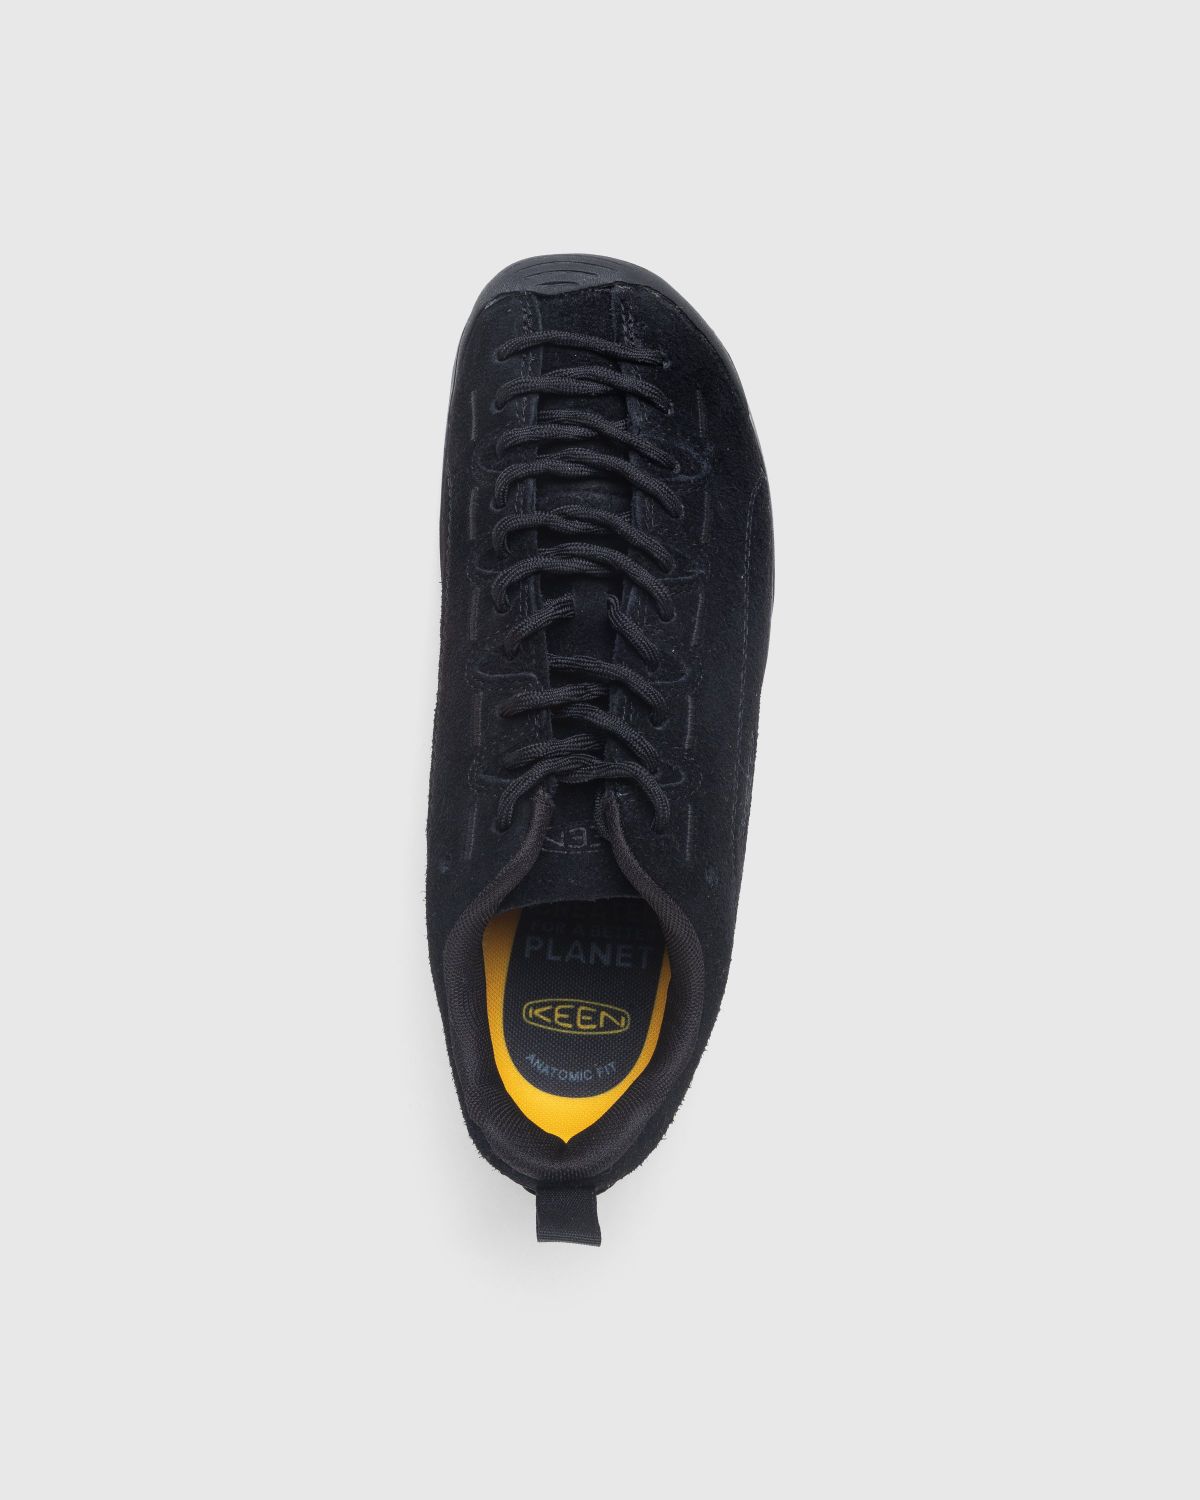 Keen – Jasper Black - Low Top Sneakers - Black - Image 5